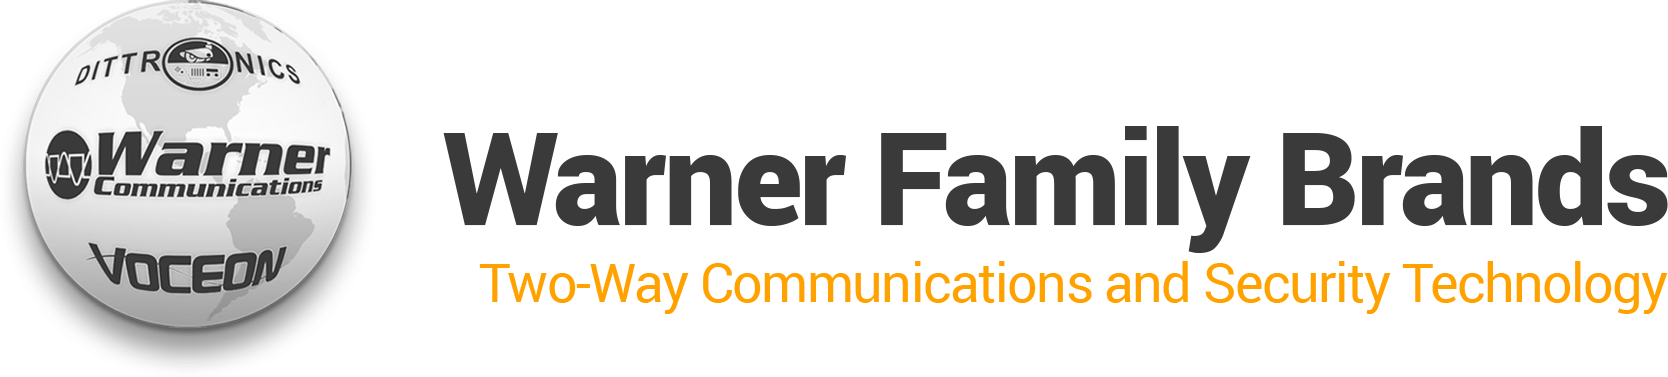 Warner Family Brands